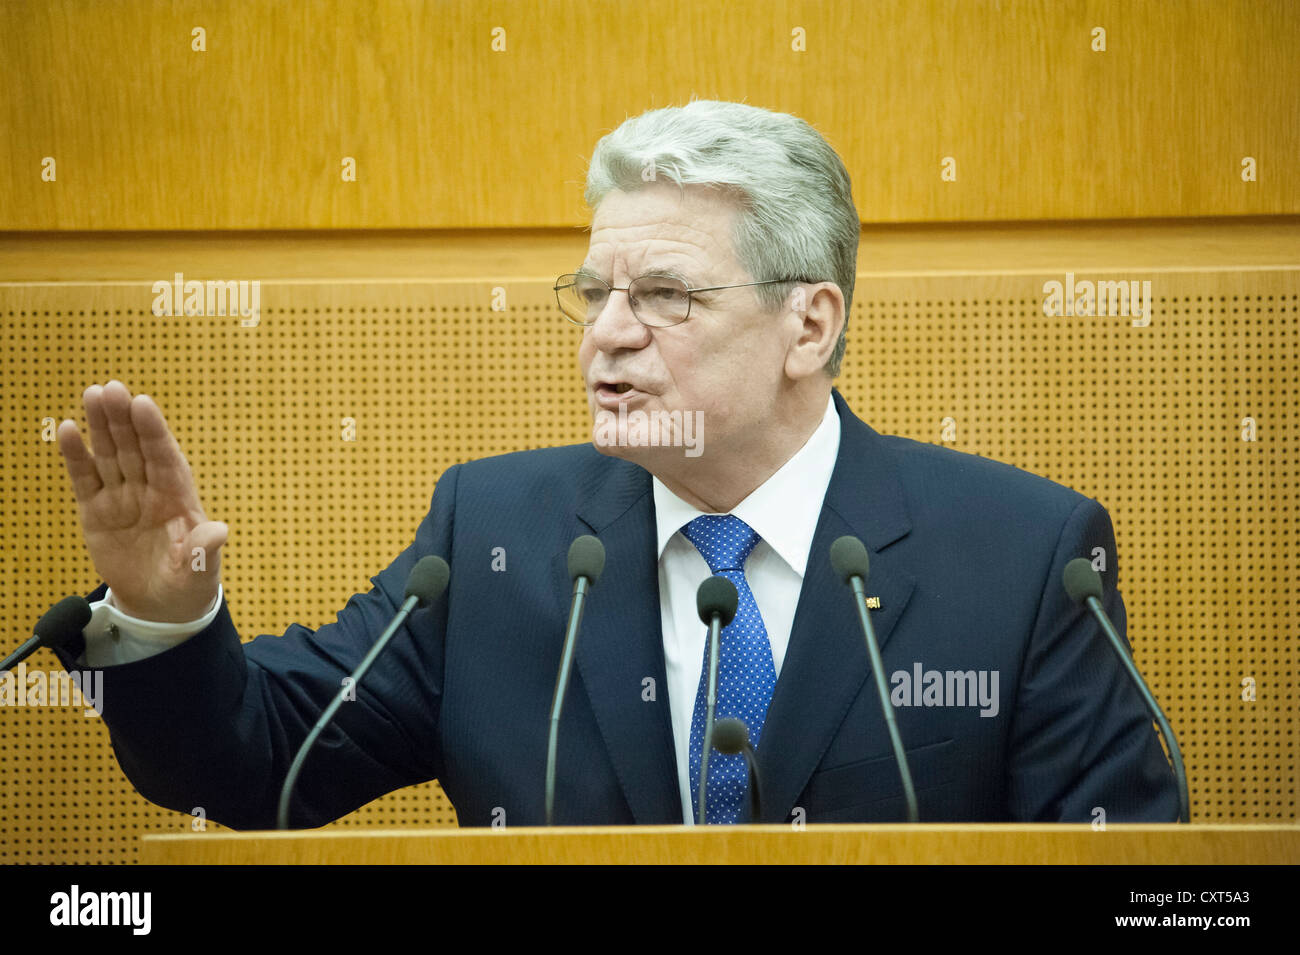 Il Presidente federale Joachim Gauck rivolgendosi ai deputati del Landtag, membro del Parlamento europeo, visita inaugurale del presidente federale Foto Stock